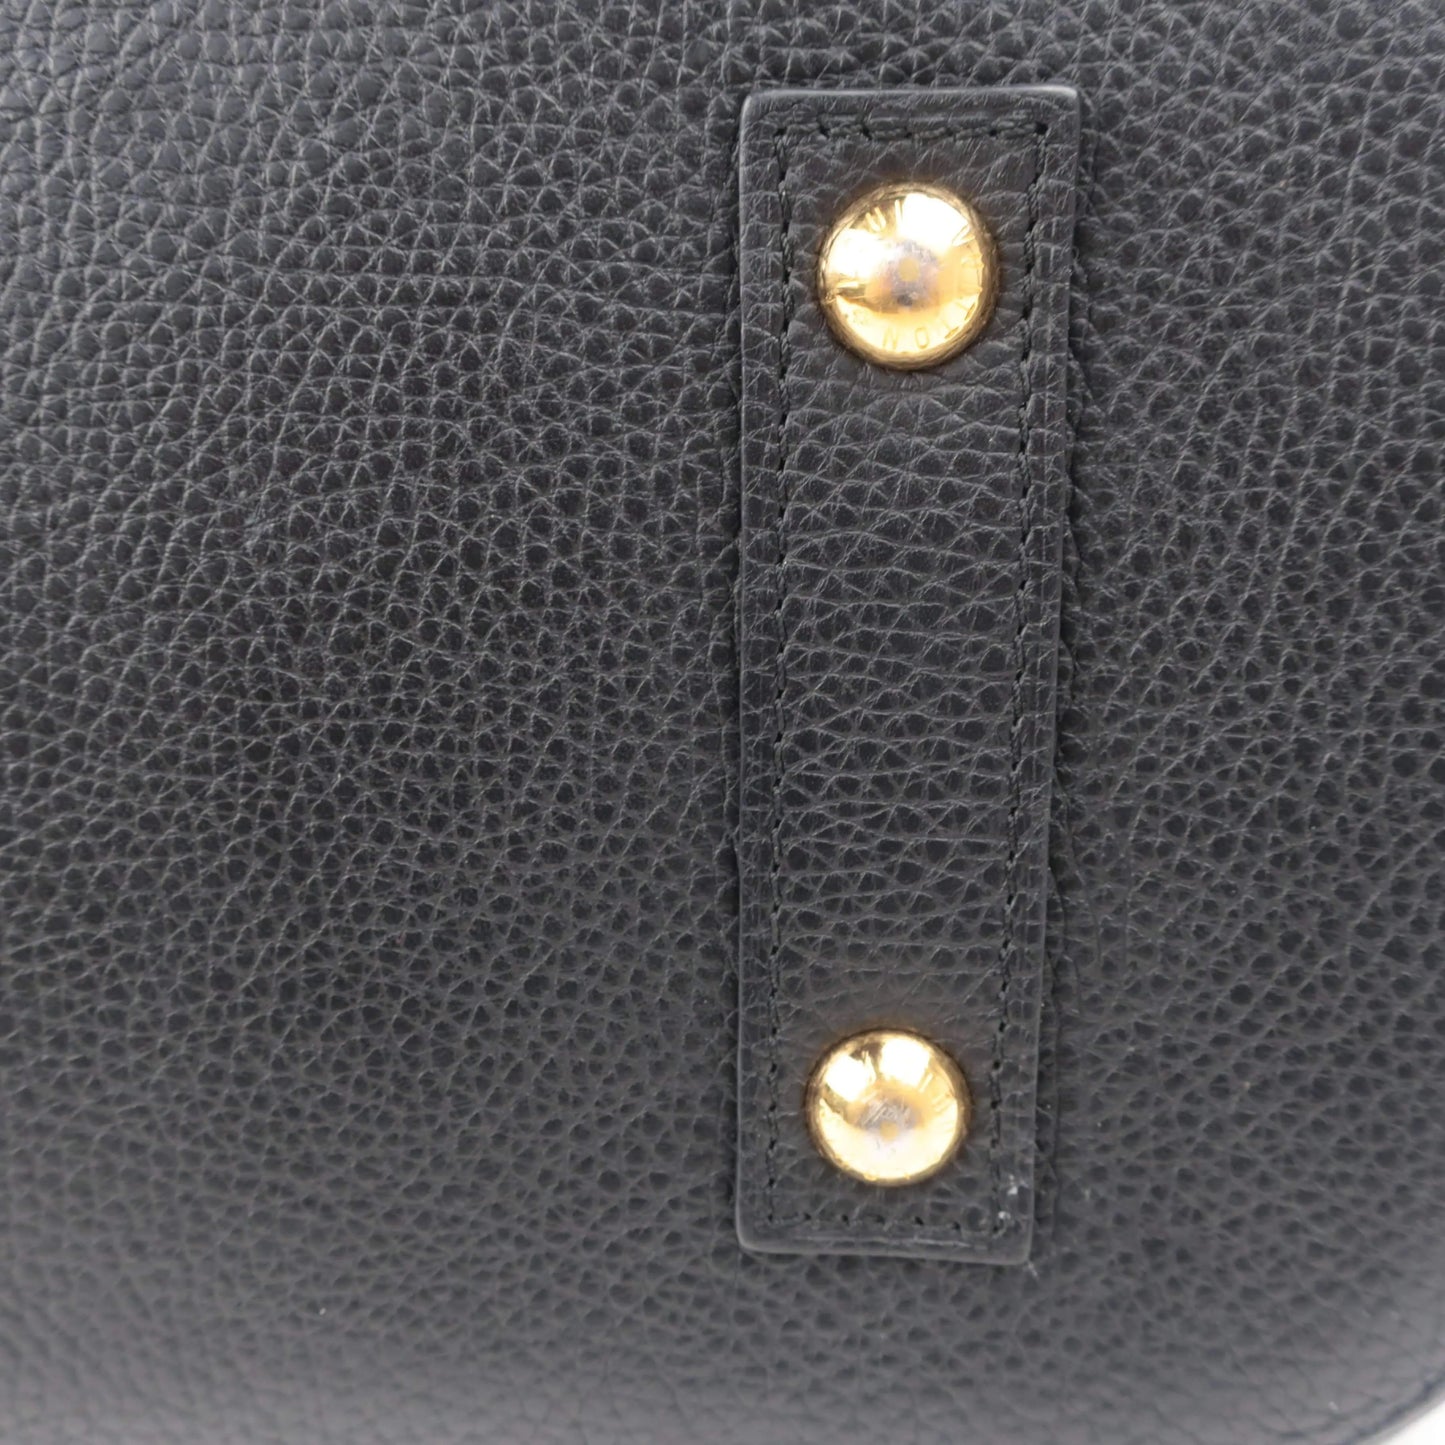 Louis Vuitton Louis Vuitton Alma MM Taurillion Limited Edition Bag LVBagaholic